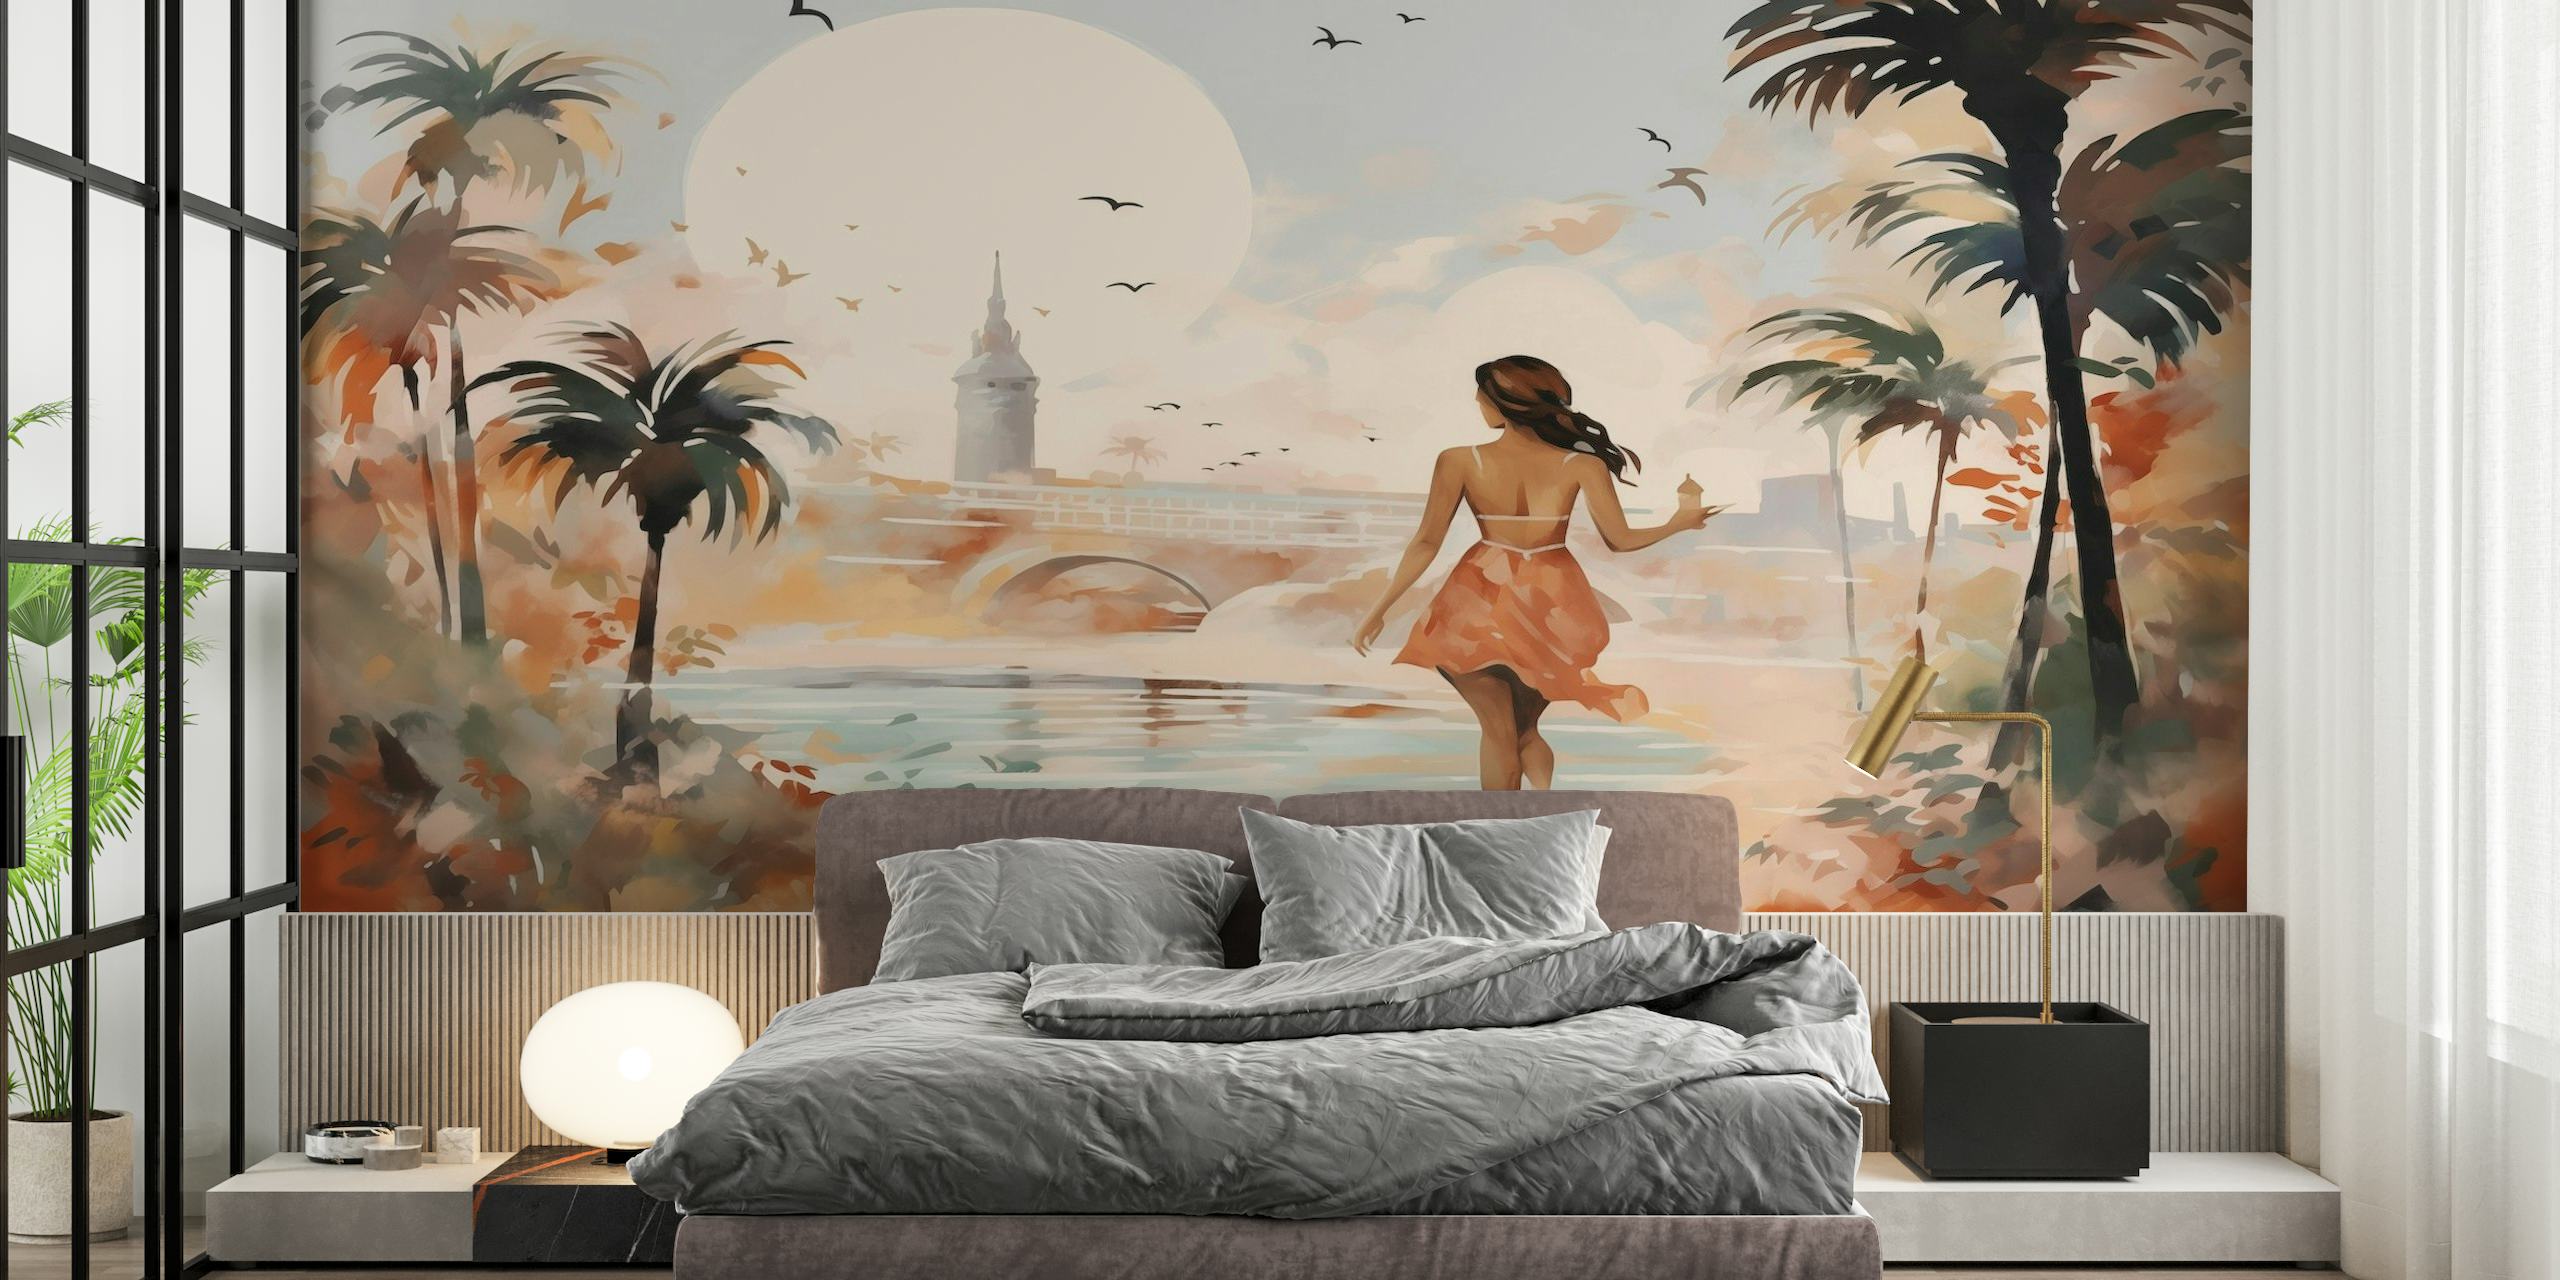 Impresionista mural de pared de paisaje urbano de verano con la silueta de una persona caminando bajo las palmeras.